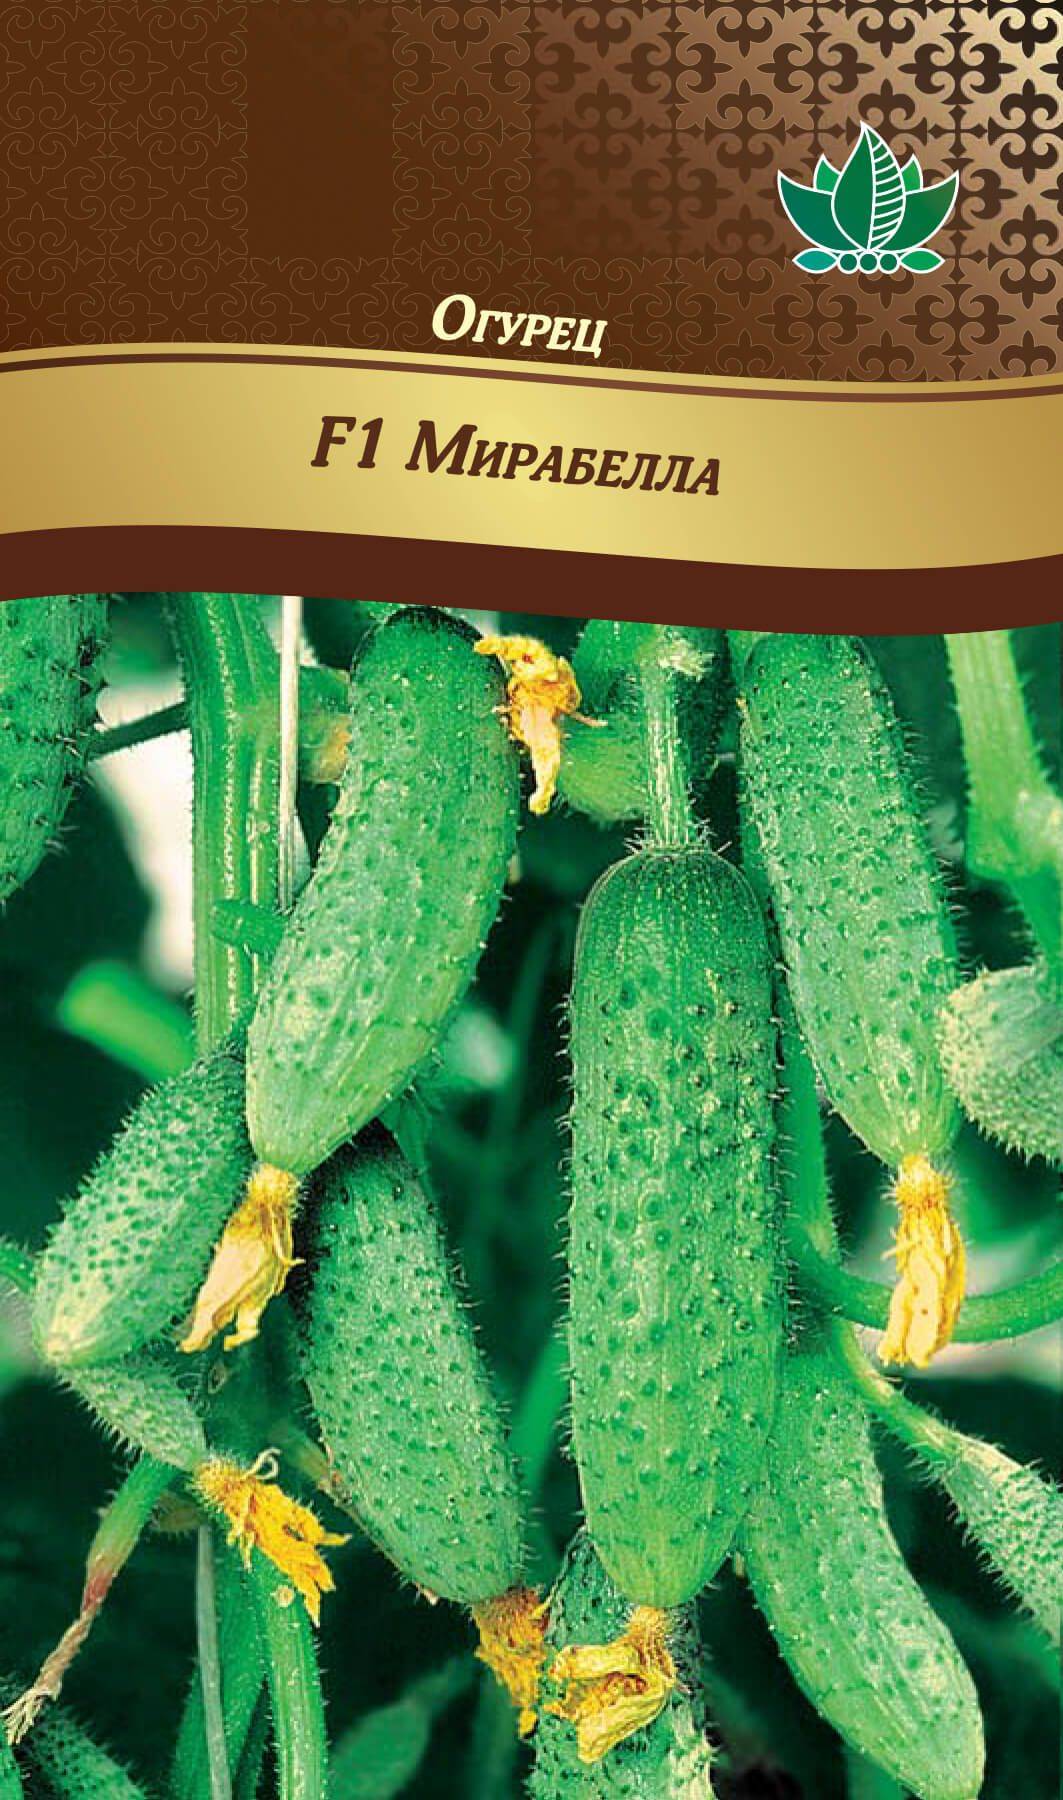 Огурец мирабелла (f1): описание сорта, отзывы тех, кто его выращивал, особенности агротехники